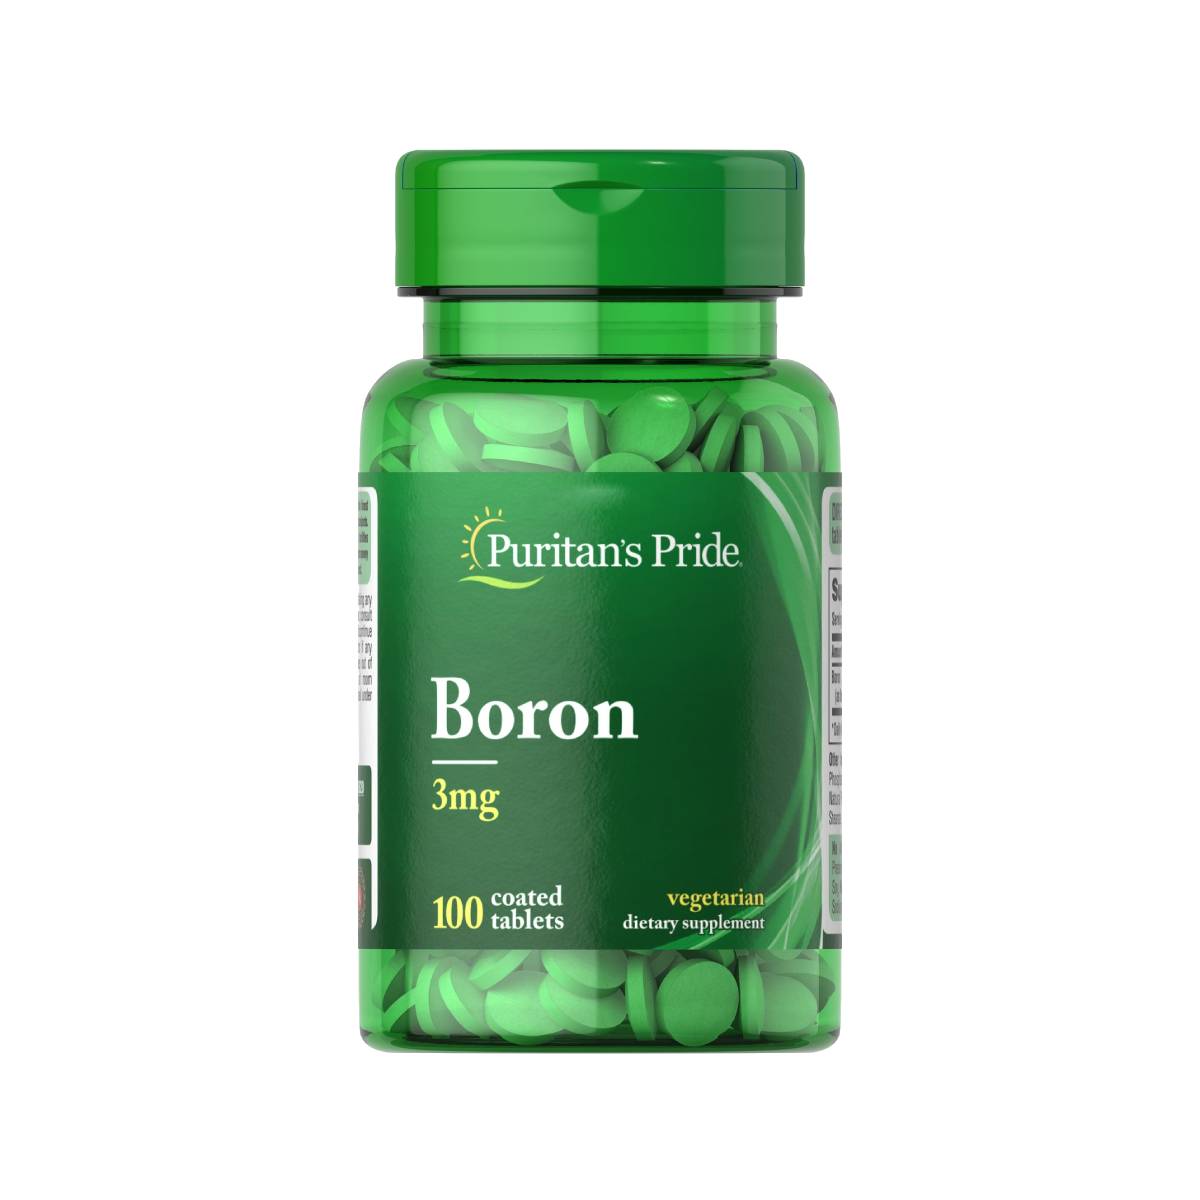 Puritan's Pride, Boron 3 mg, Puritans Pride, Boro 3 mg